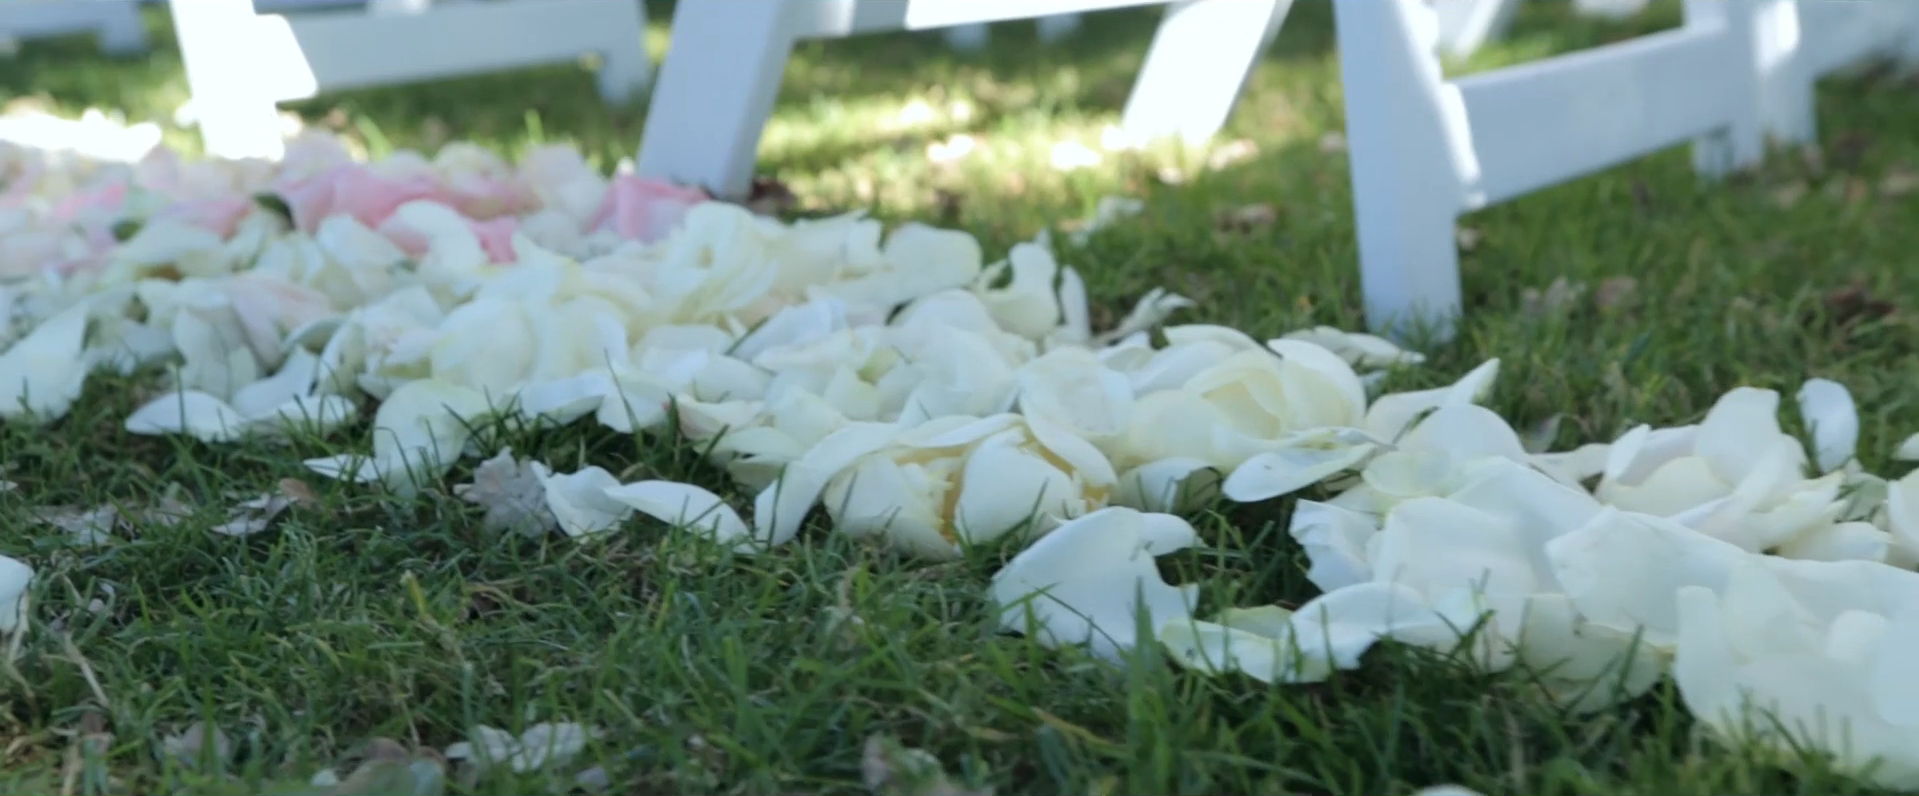 2015 08 20 1814 - A Whimsical Ojai Valley Inn & Spa Wedding Video